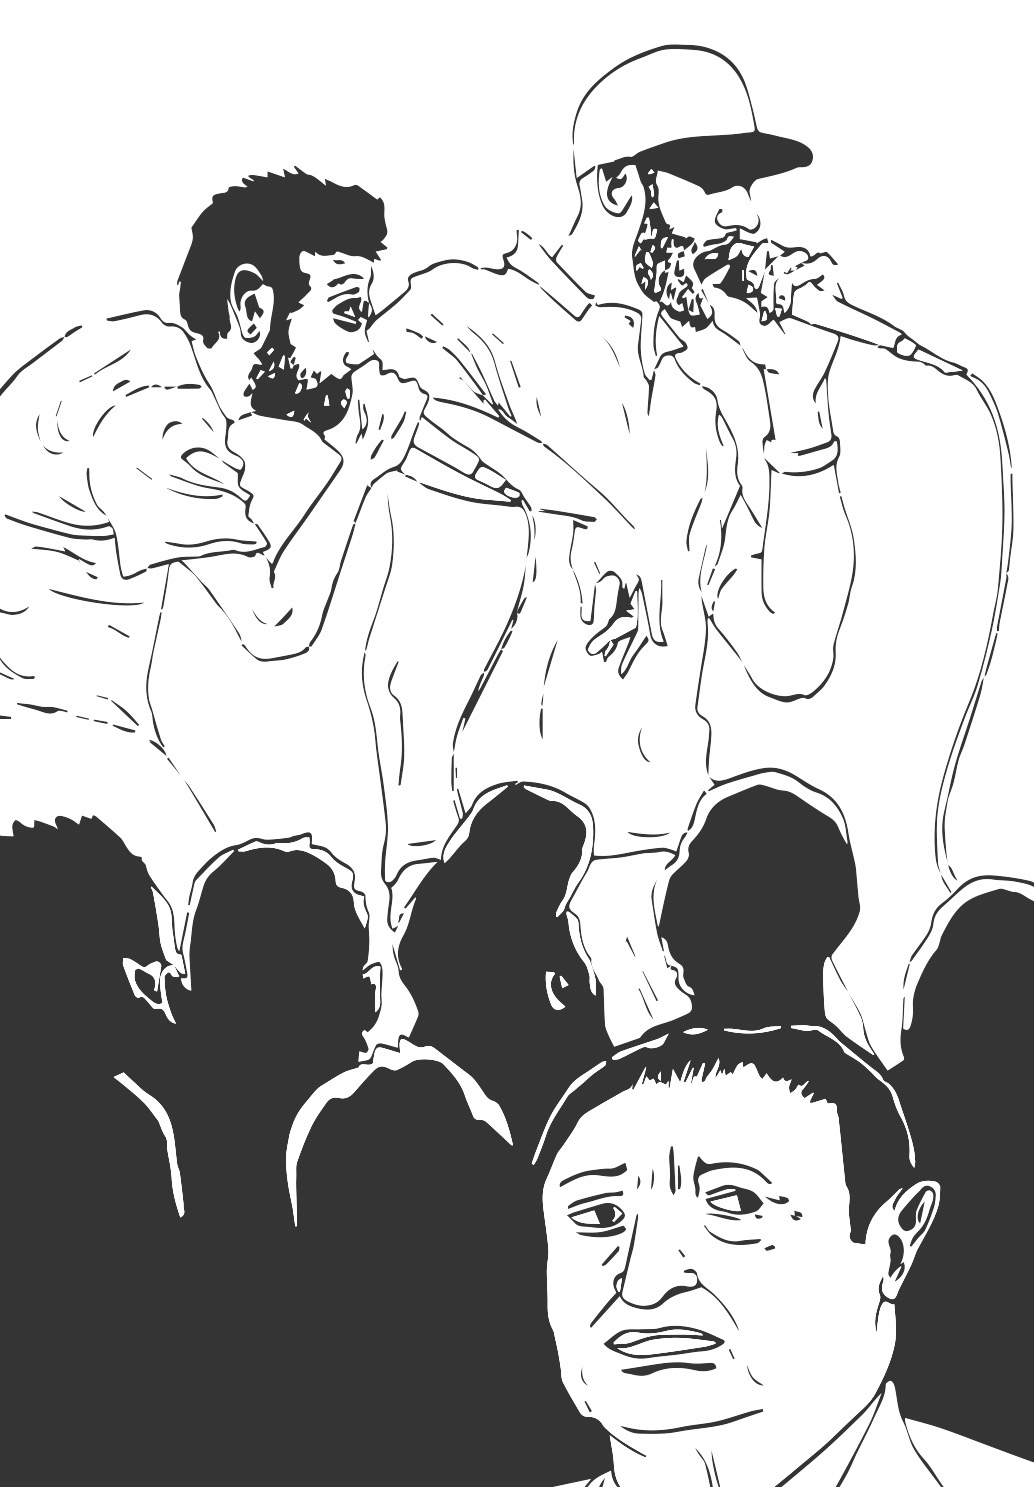 Illustrations de Xavier Frederick. Rap, musique engagée et révolution, en particulier dans les Printemps arabes.